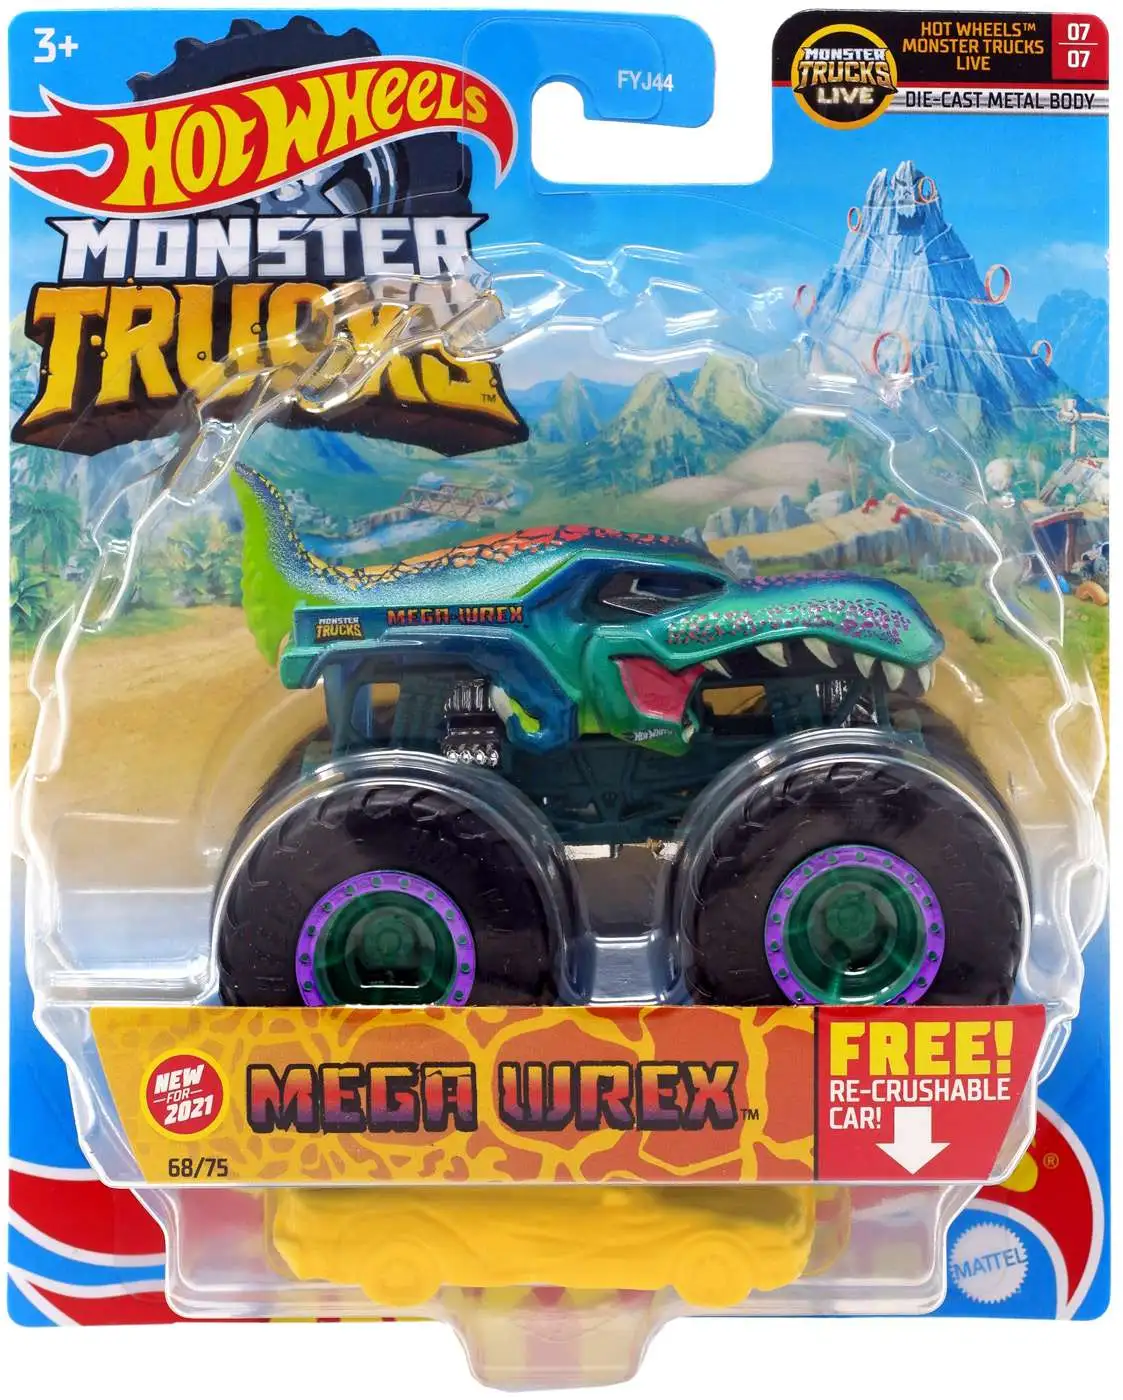 Hot Wheels Monster Truck Mega Wrex NEW FOR 2021 68/75 FYJ44